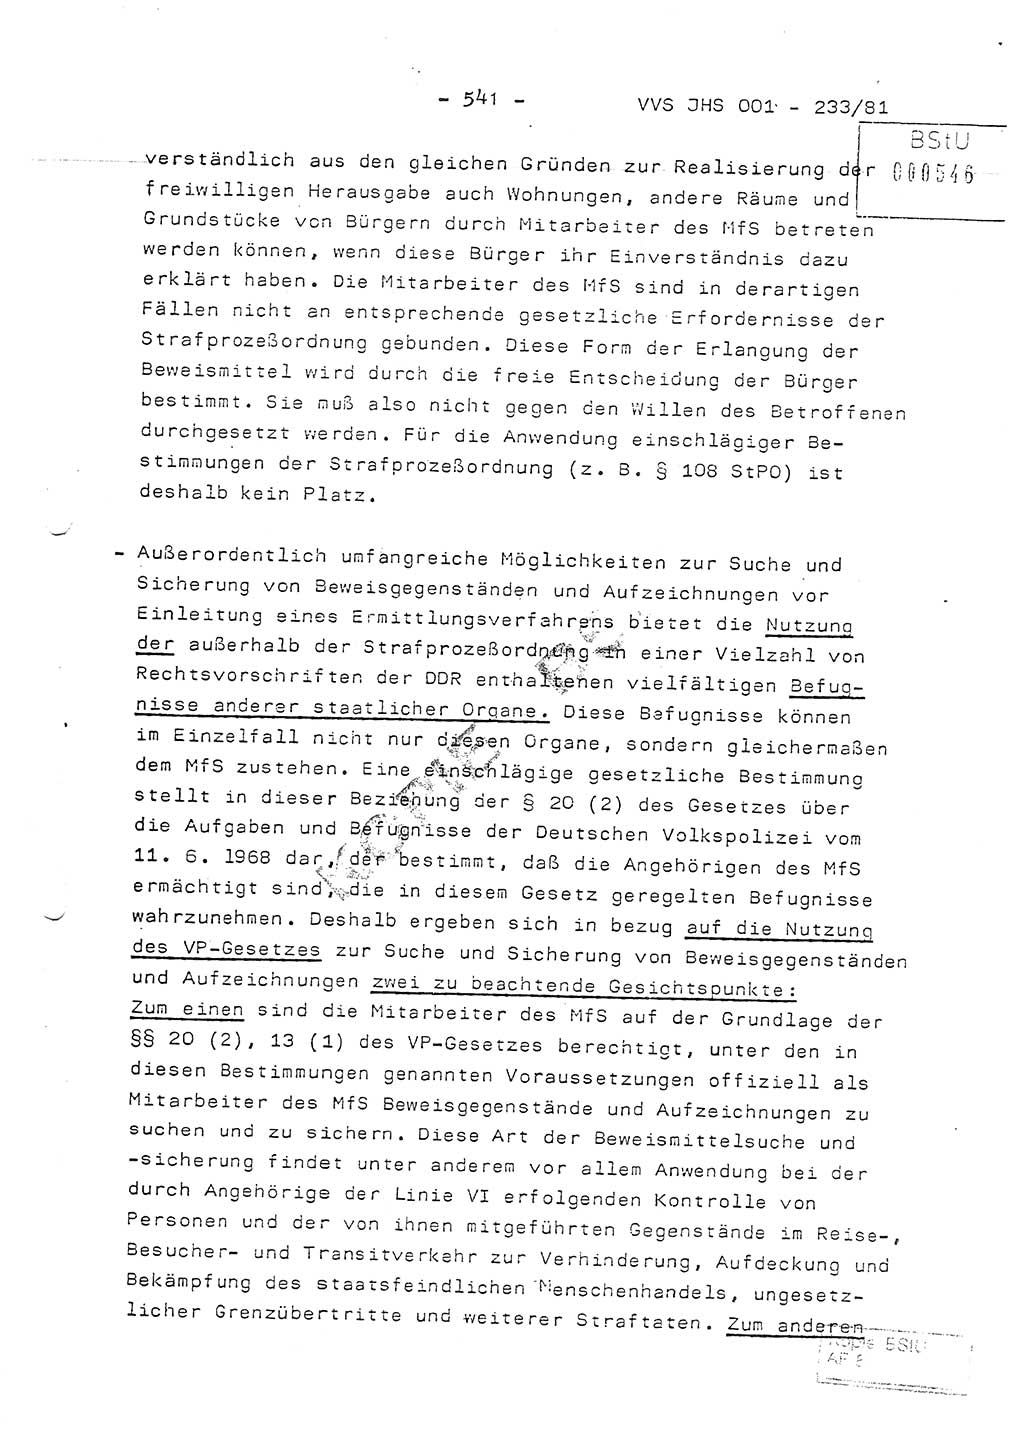 Dissertation Oberstleutnant Horst Zank (JHS), Oberstleutnant Dr. Karl-Heinz Knoblauch (JHS), Oberstleutnant Gustav-Adolf Kowalewski (HA Ⅸ), Oberstleutnant Wolfgang Plötner (HA Ⅸ), Ministerium für Staatssicherheit (MfS) [Deutsche Demokratische Republik (DDR)], Juristische Hochschule (JHS), Vertrauliche Verschlußsache (VVS) o001-233/81, Potsdam 1981, Blatt 541 (Diss. MfS DDR JHS VVS o001-233/81 1981, Bl. 541)